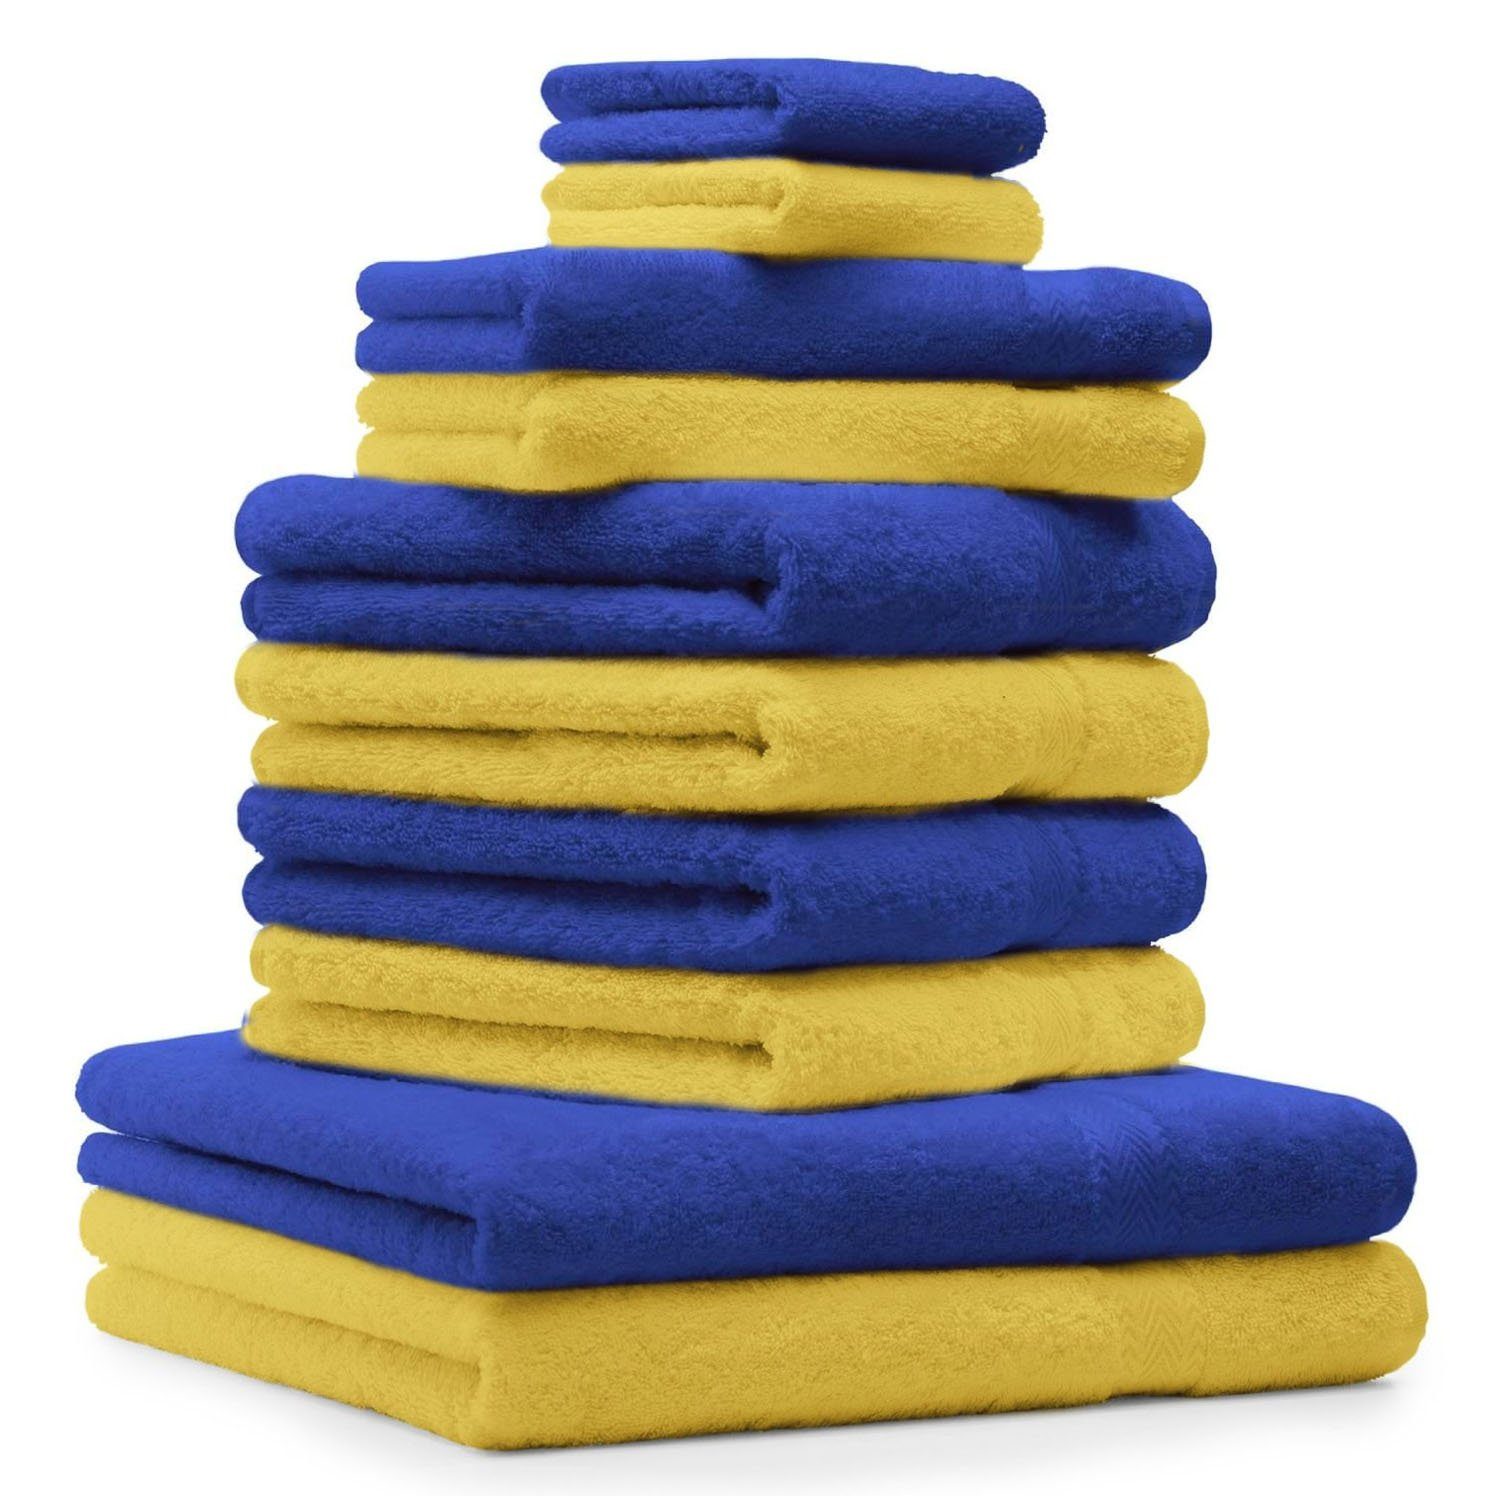 Betz Handtuch Set 10-TLG. Handtuch-Set Classic Farbe gelb und royalblau, 100% Baumwolle